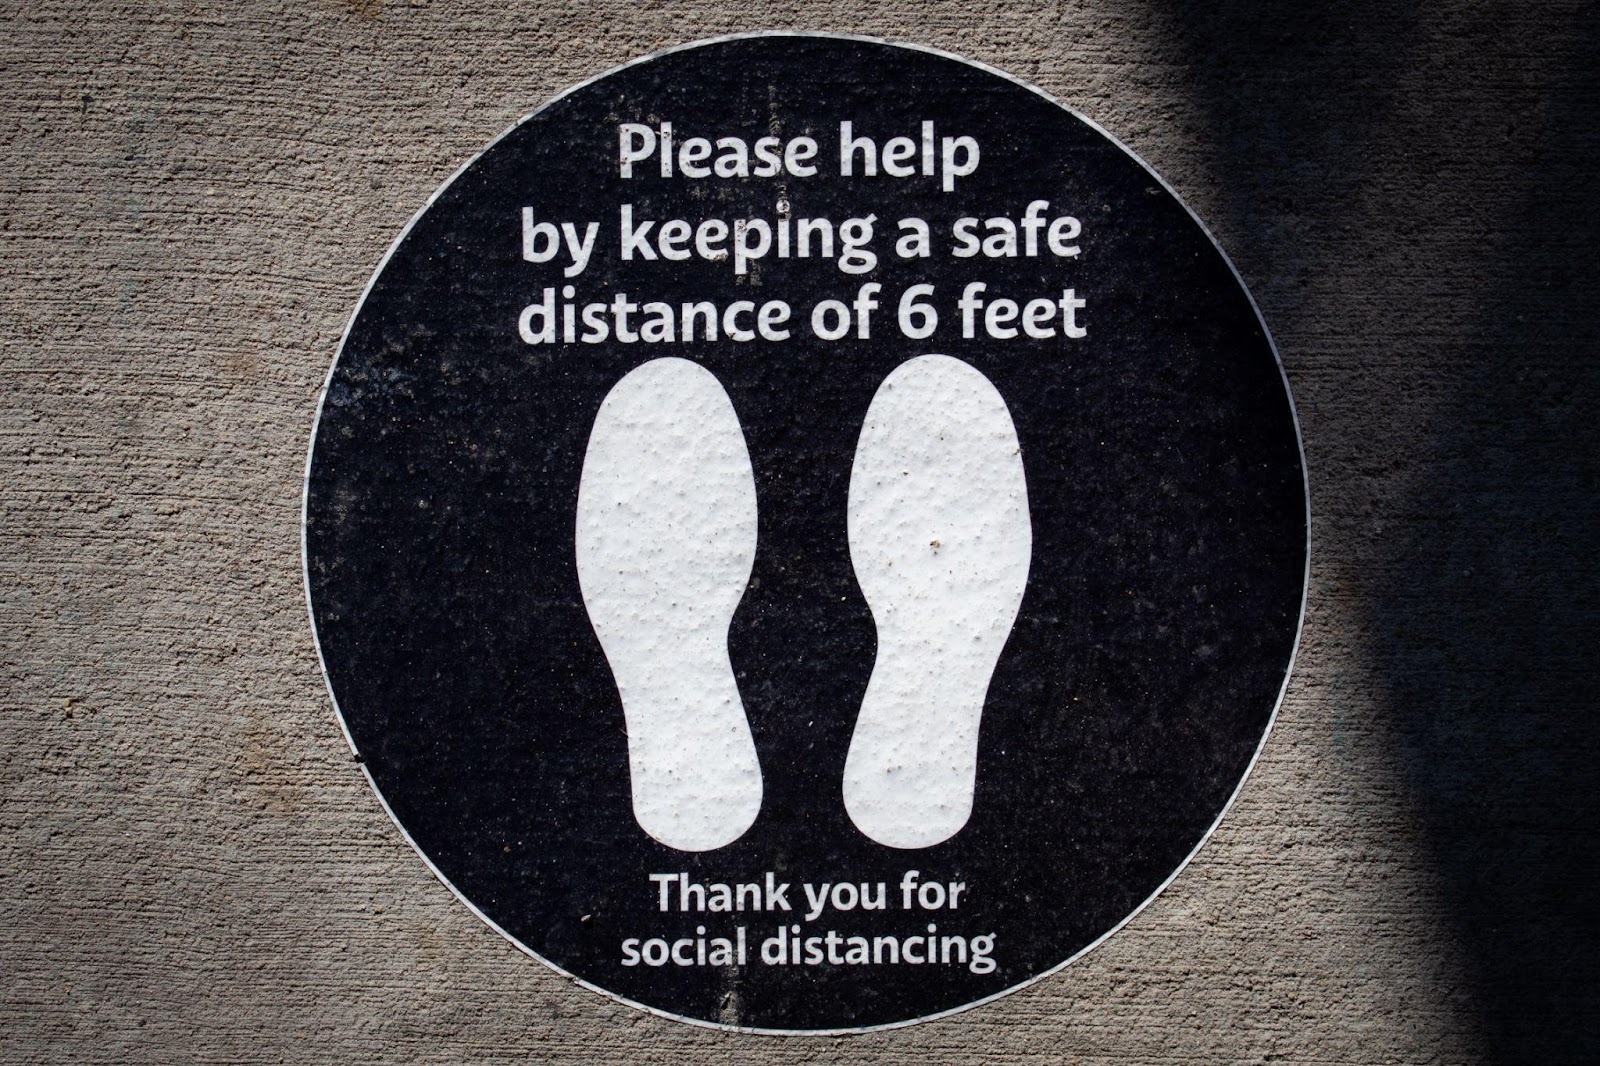 Dos huellas de zapatos en círculo con el mensaje “Por favor ayuda manteniendo una distancia segura de 6 pies. Gracias por el distanciamiento social”.